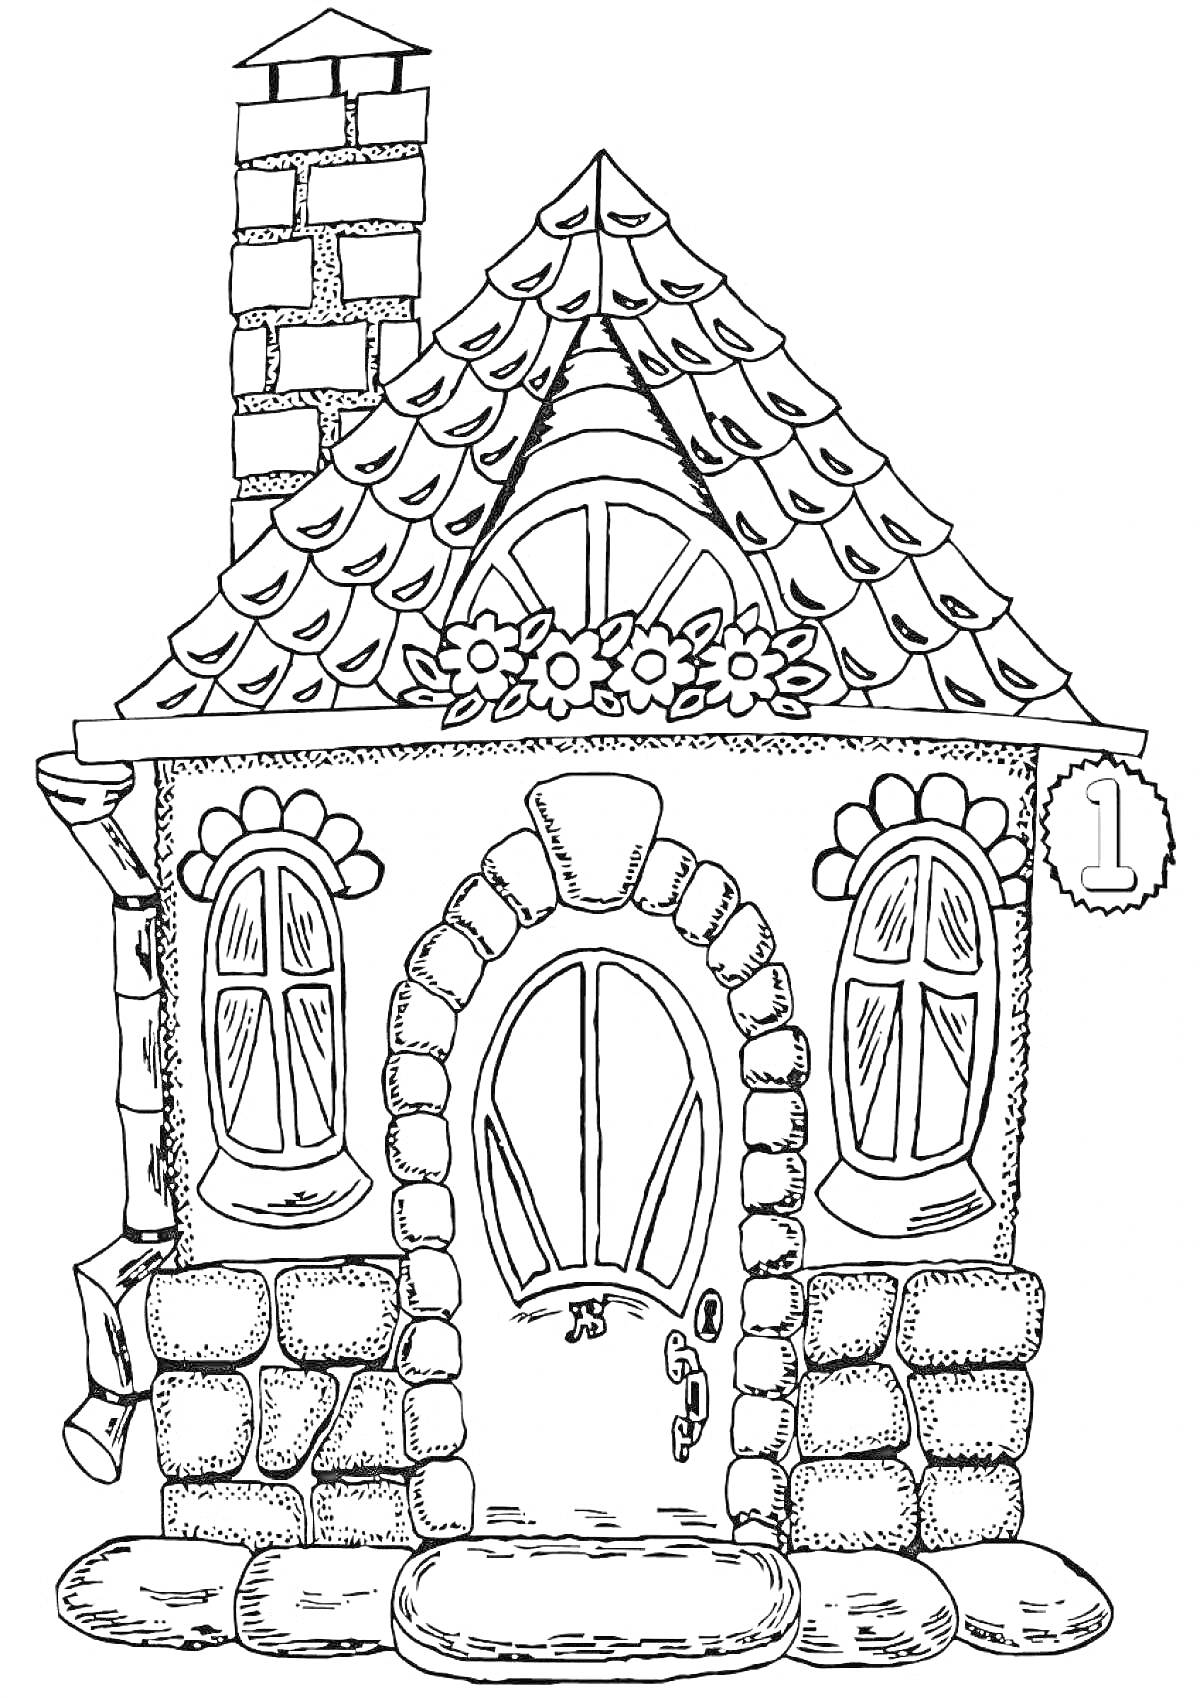 Раскраска Домик с кирпичным дымоходом, черепичной крышей, цветами на окне и дверью с номером один